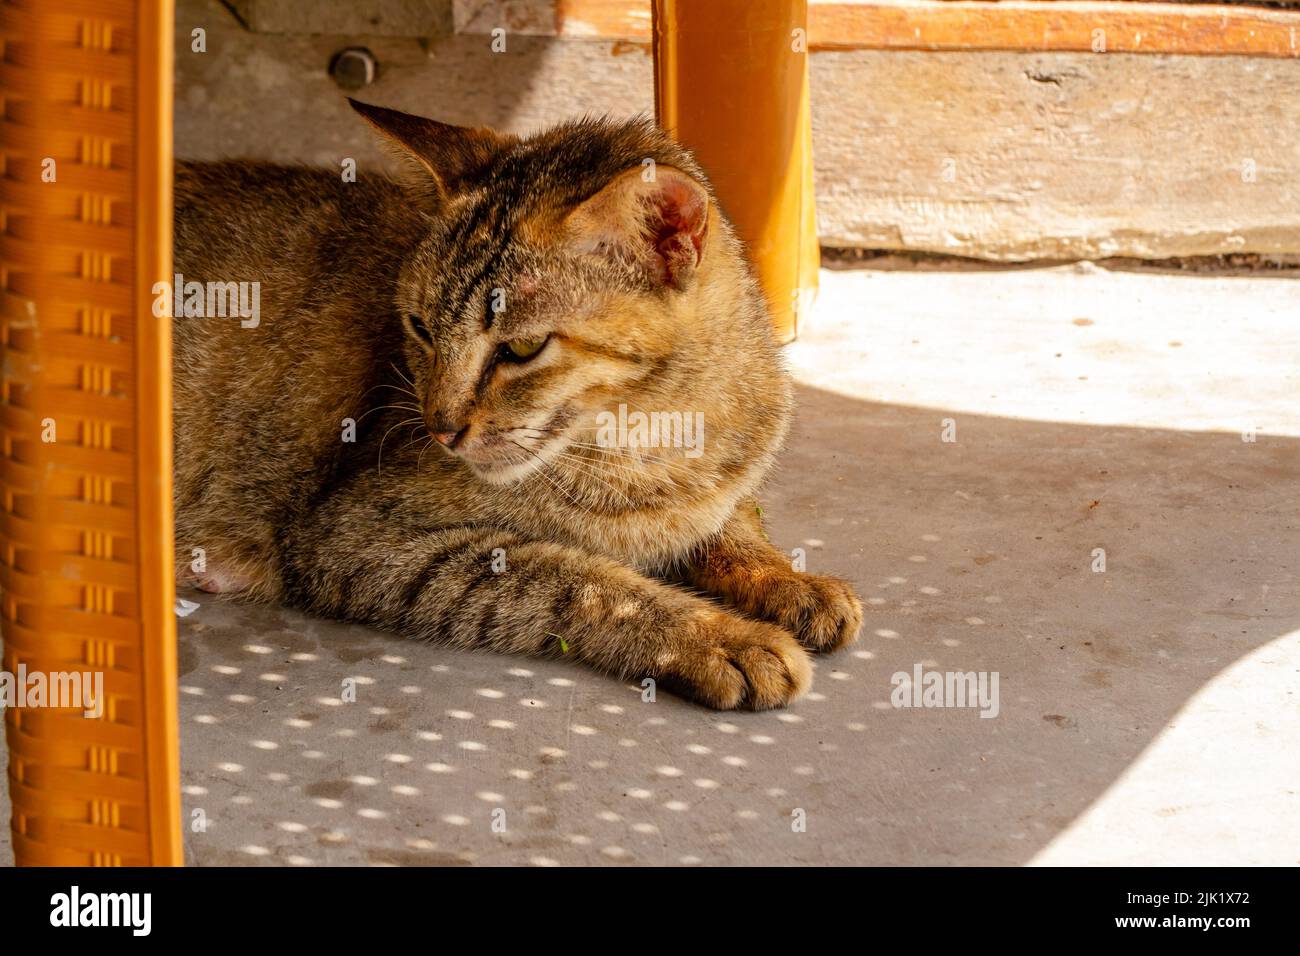 Acérquese A Un gato que está durmiendo y sentado perezosamente, una mascota que está de moda en la sociedad musulmana Foto de stock